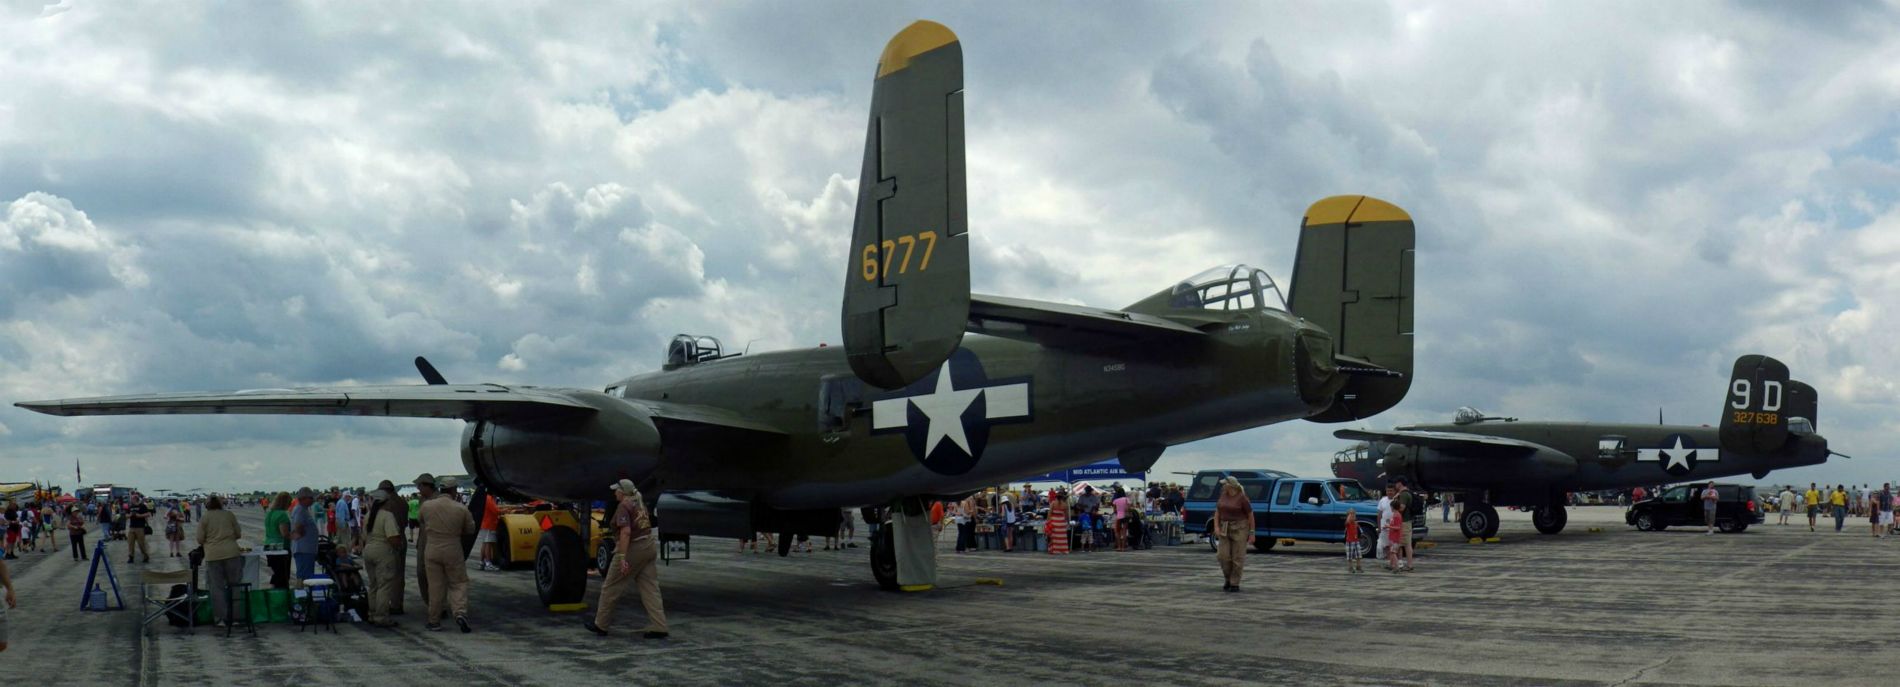 B-25 tail.